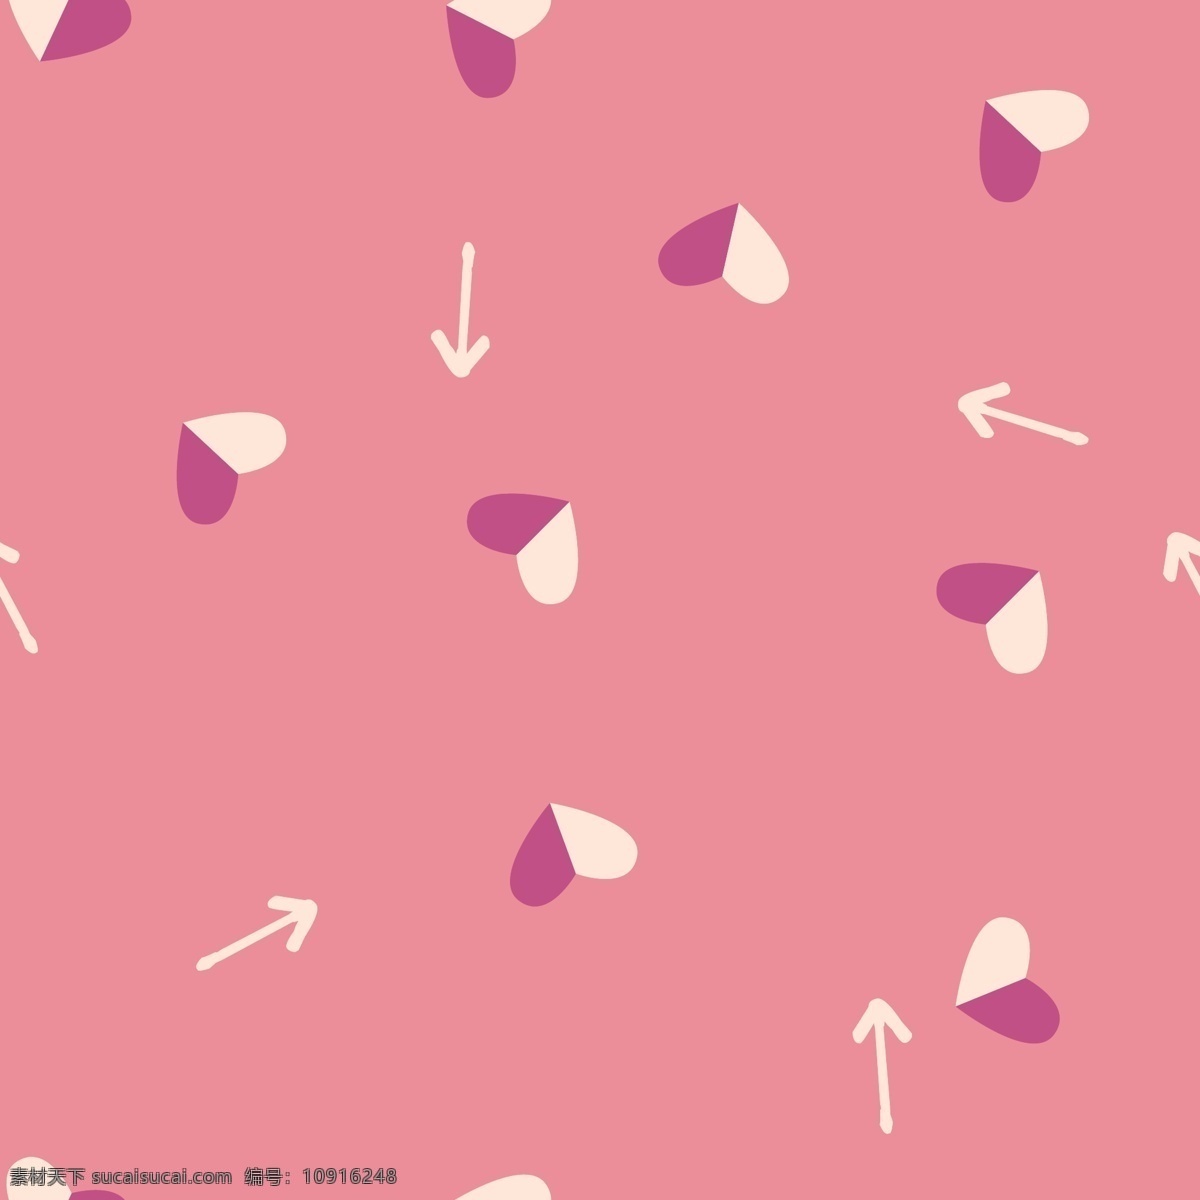 粉红色 拼接 爱心 系列 填充 背景 箭头 紫色 矢量素材 设计素材 平面素材 白色 粉嫩